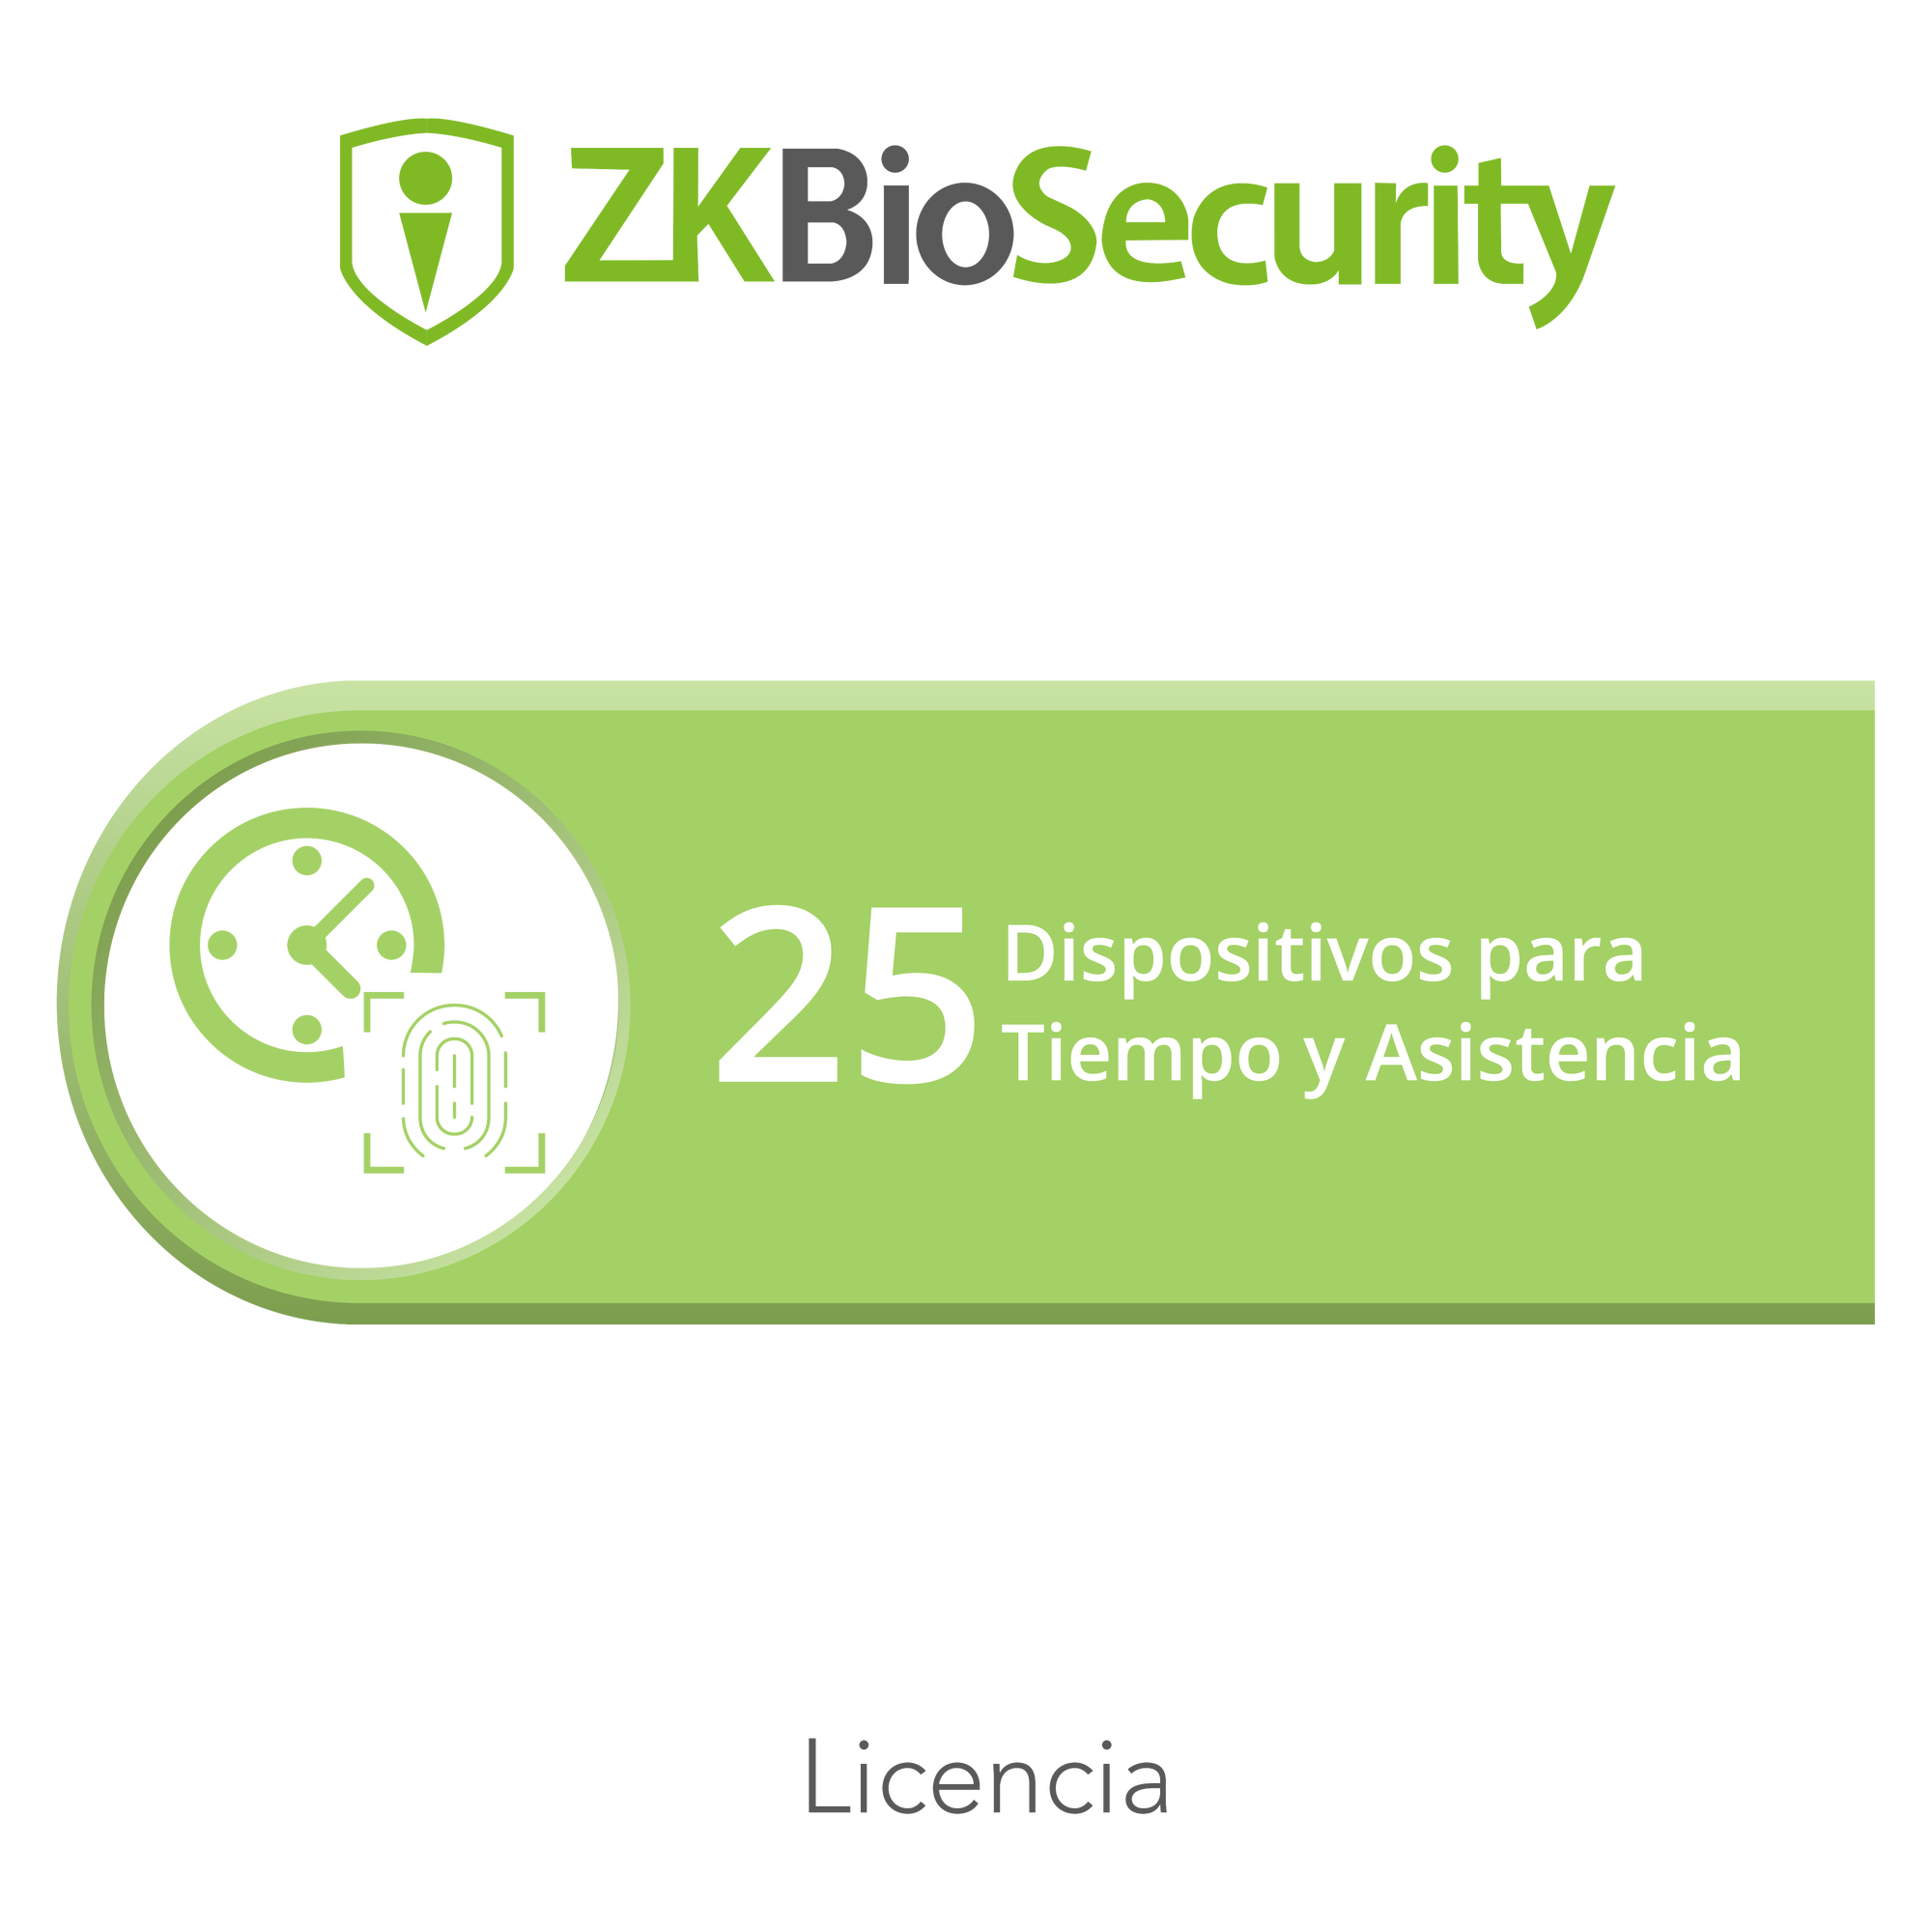 Licencia para ZKBiosecurity permite gestionar hasta 25 dispositivos para tiempo y asistencia